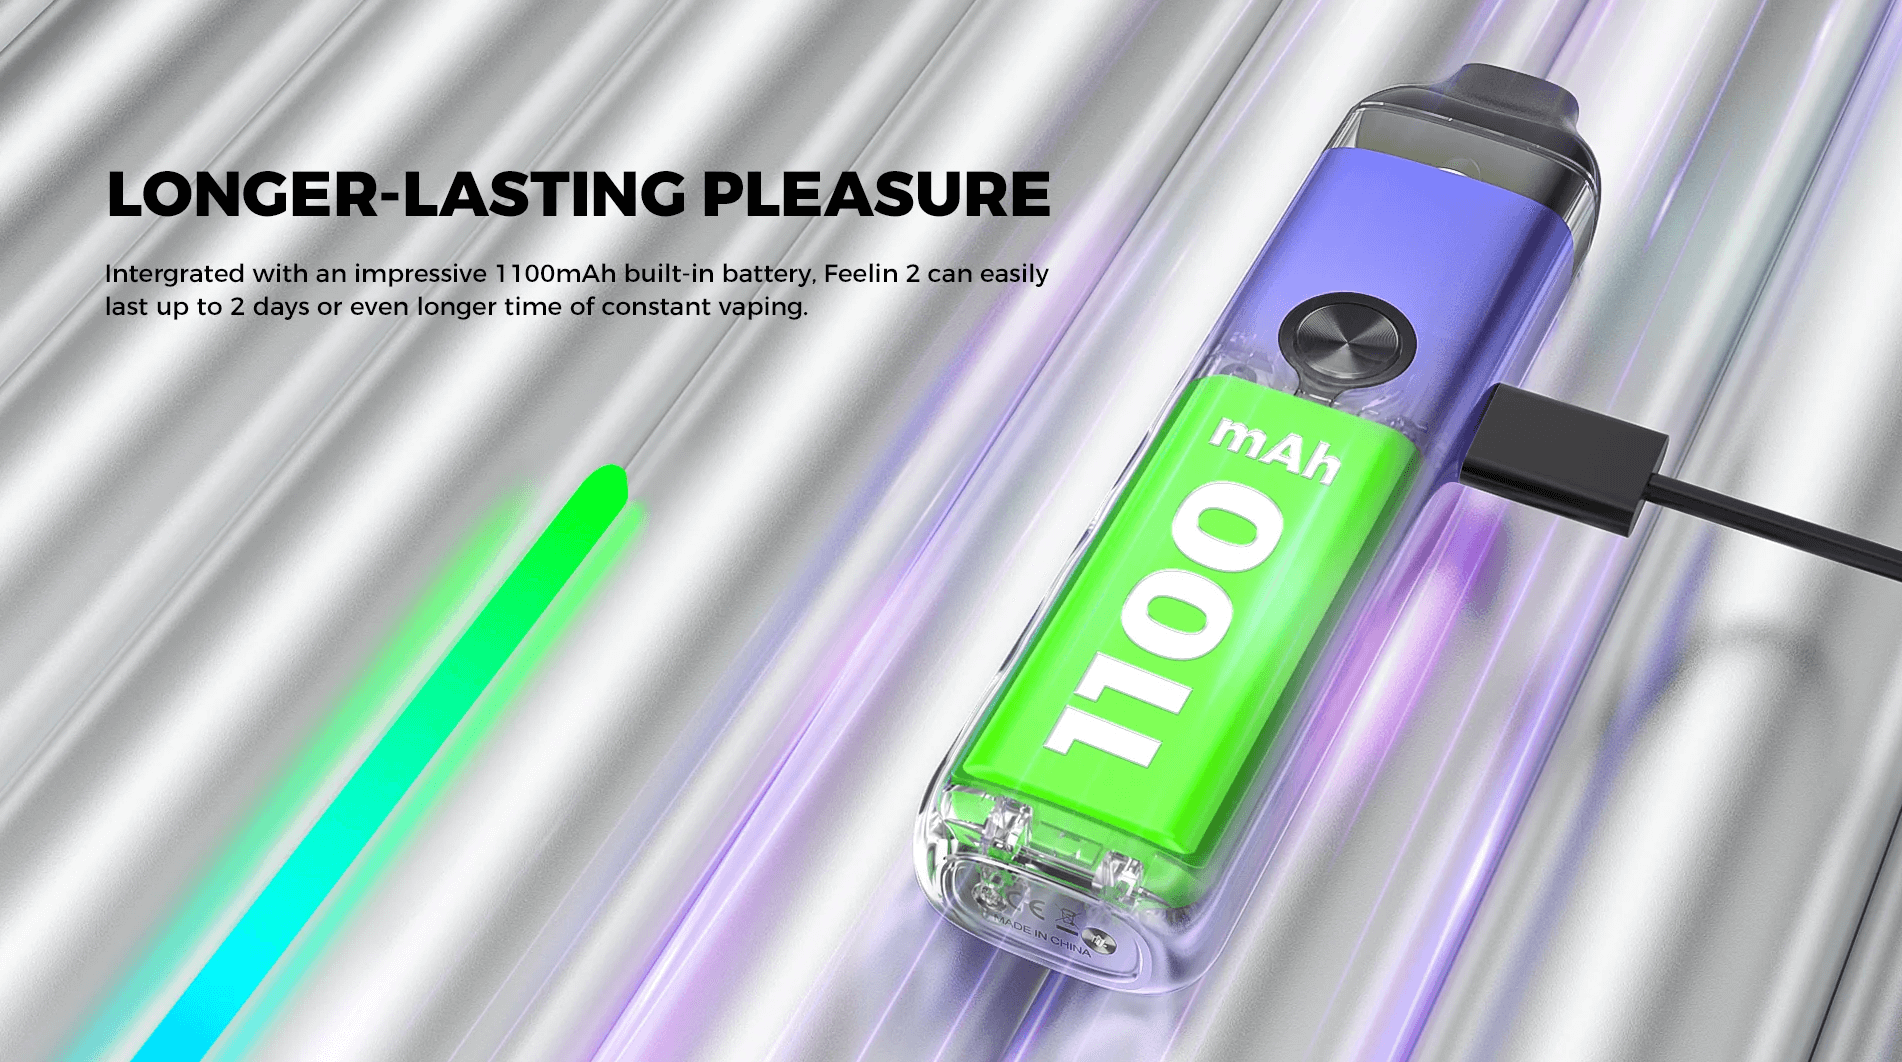 Nevoks Feelin 2 Pod Kit - 1000mah battery for longer-lasting pleasure